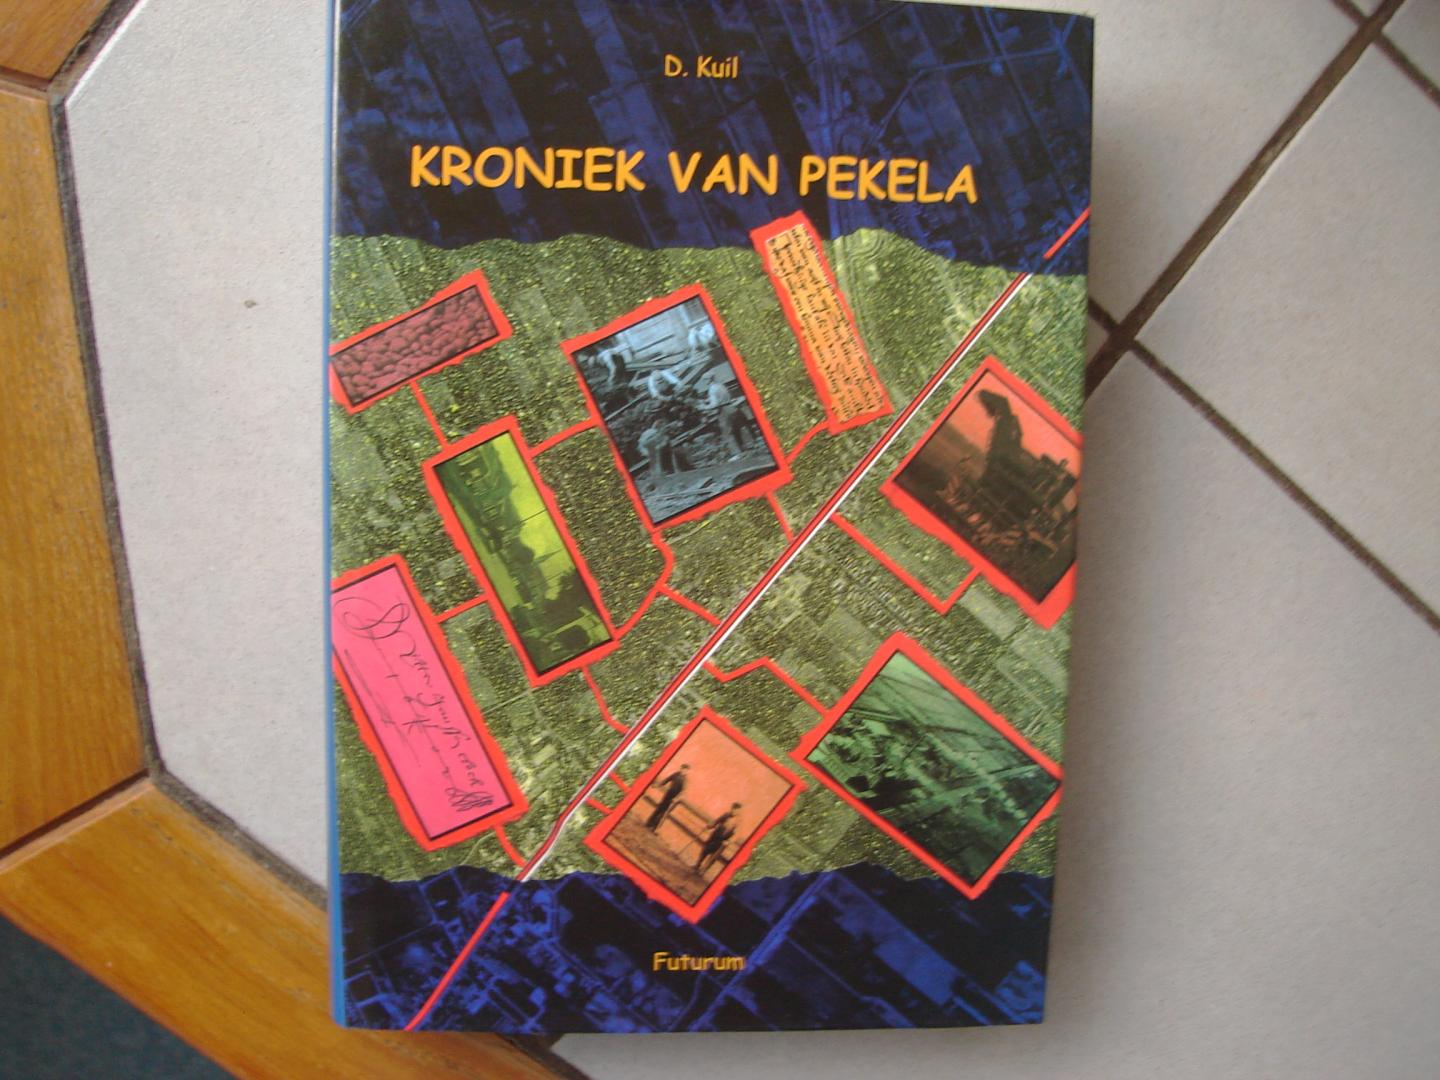 Dick Kuil. - Kroniek van Pekela. ( 1558 ) 1559 - 1999.